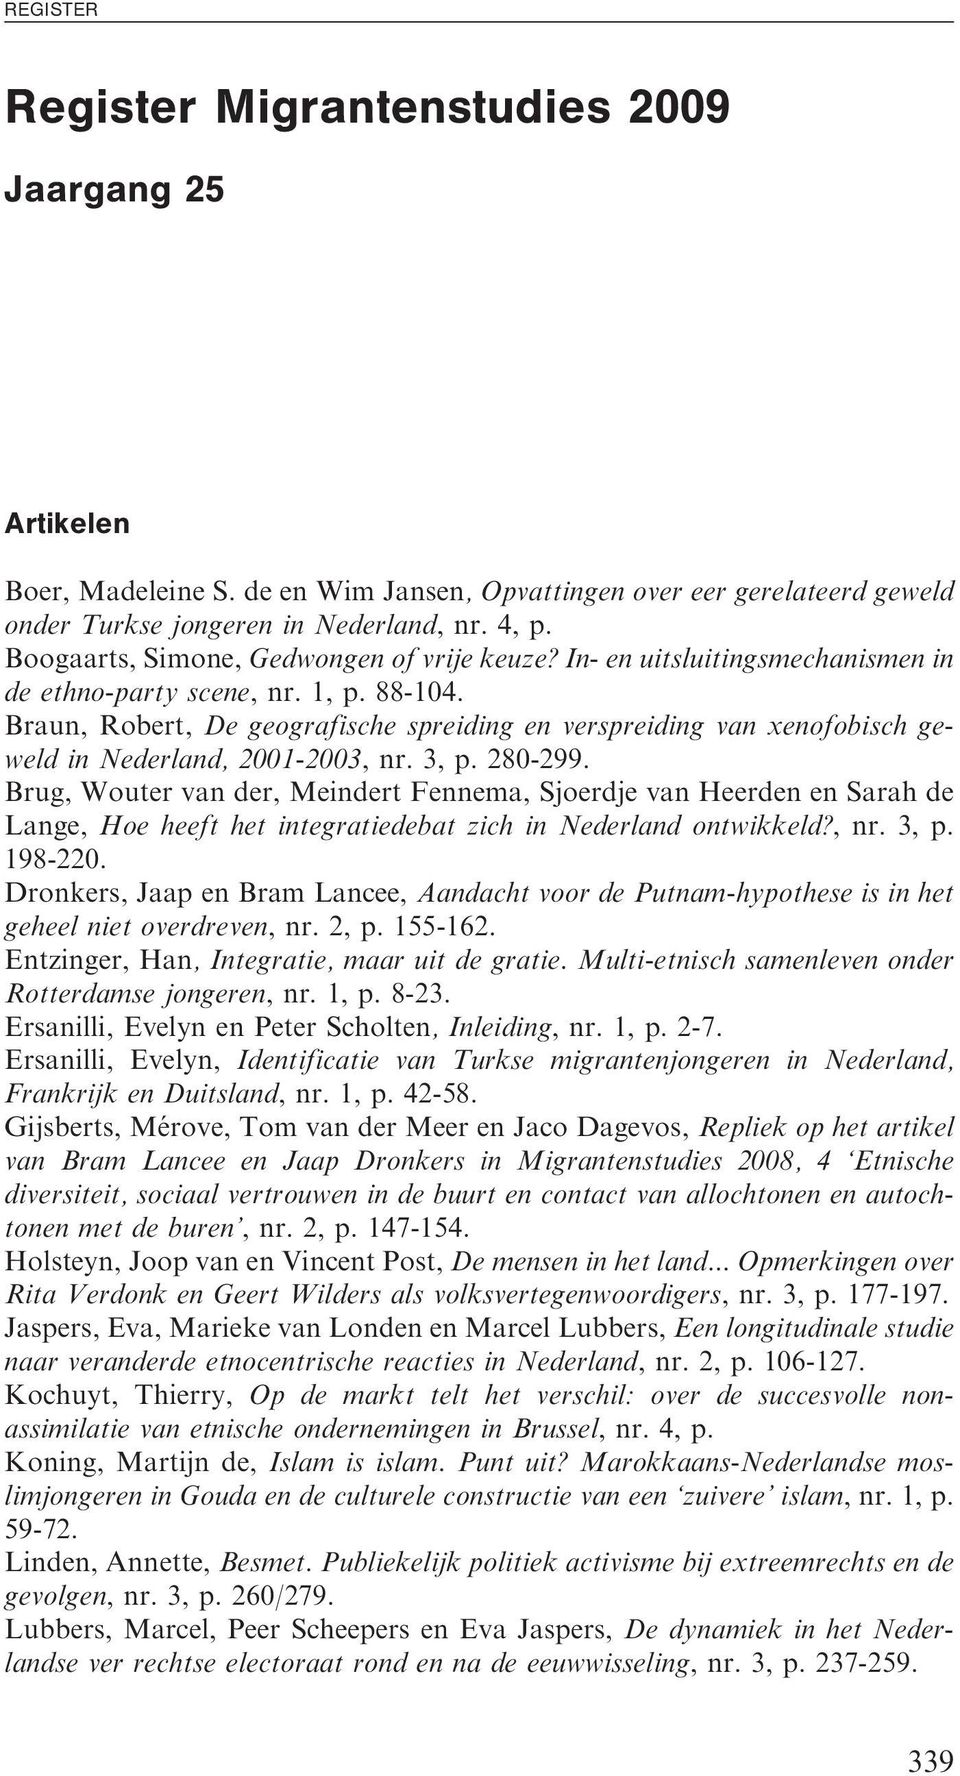 Braun, Robert, De geografische spreiding en verspreiding van xenofobisch geweld in Nederland, 2001-2003, nr. 3, p. 280-299.